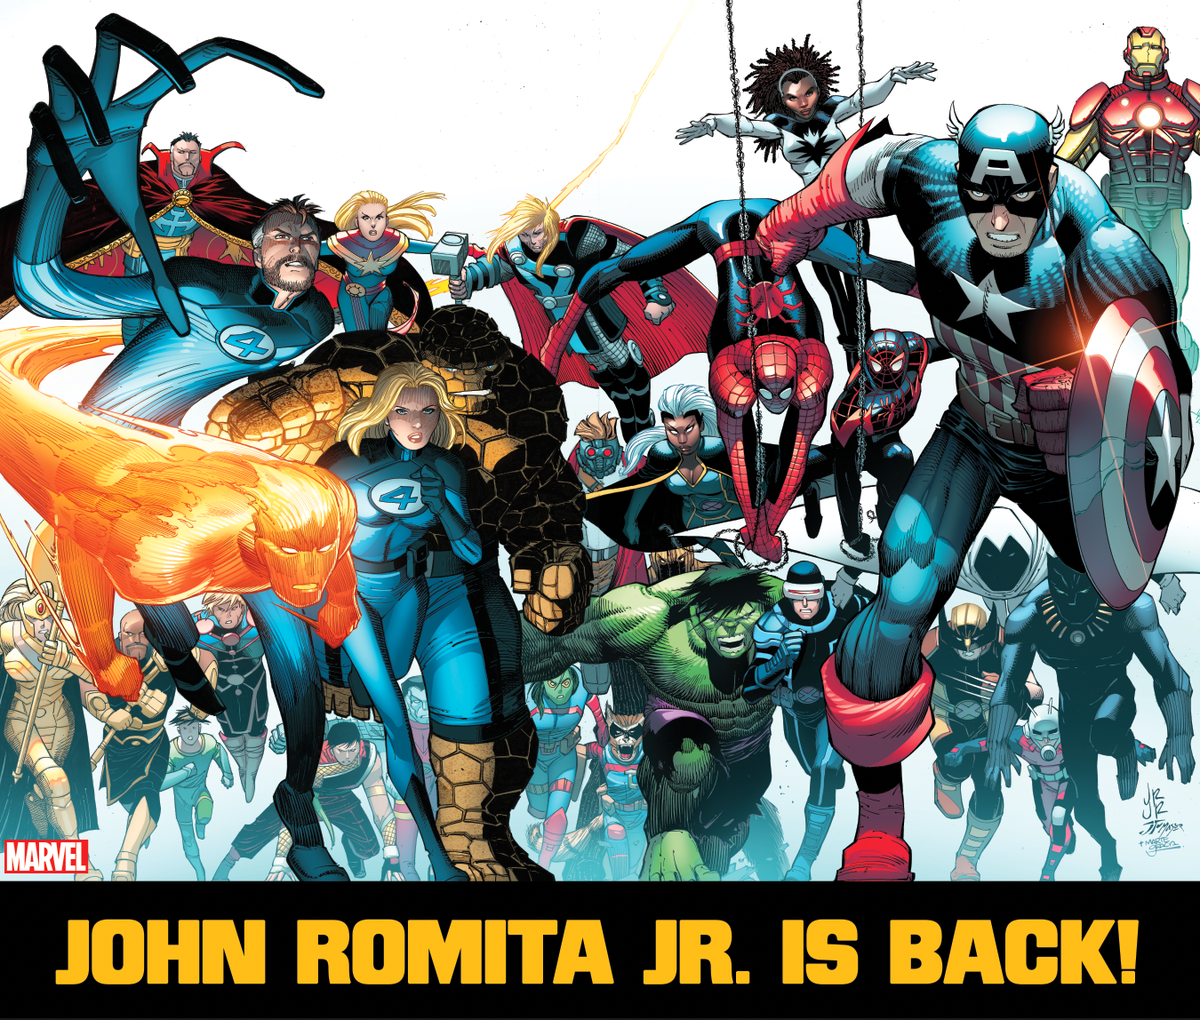 La légende de la bande dessinée John Romita Jr. revient à Marvel cet été